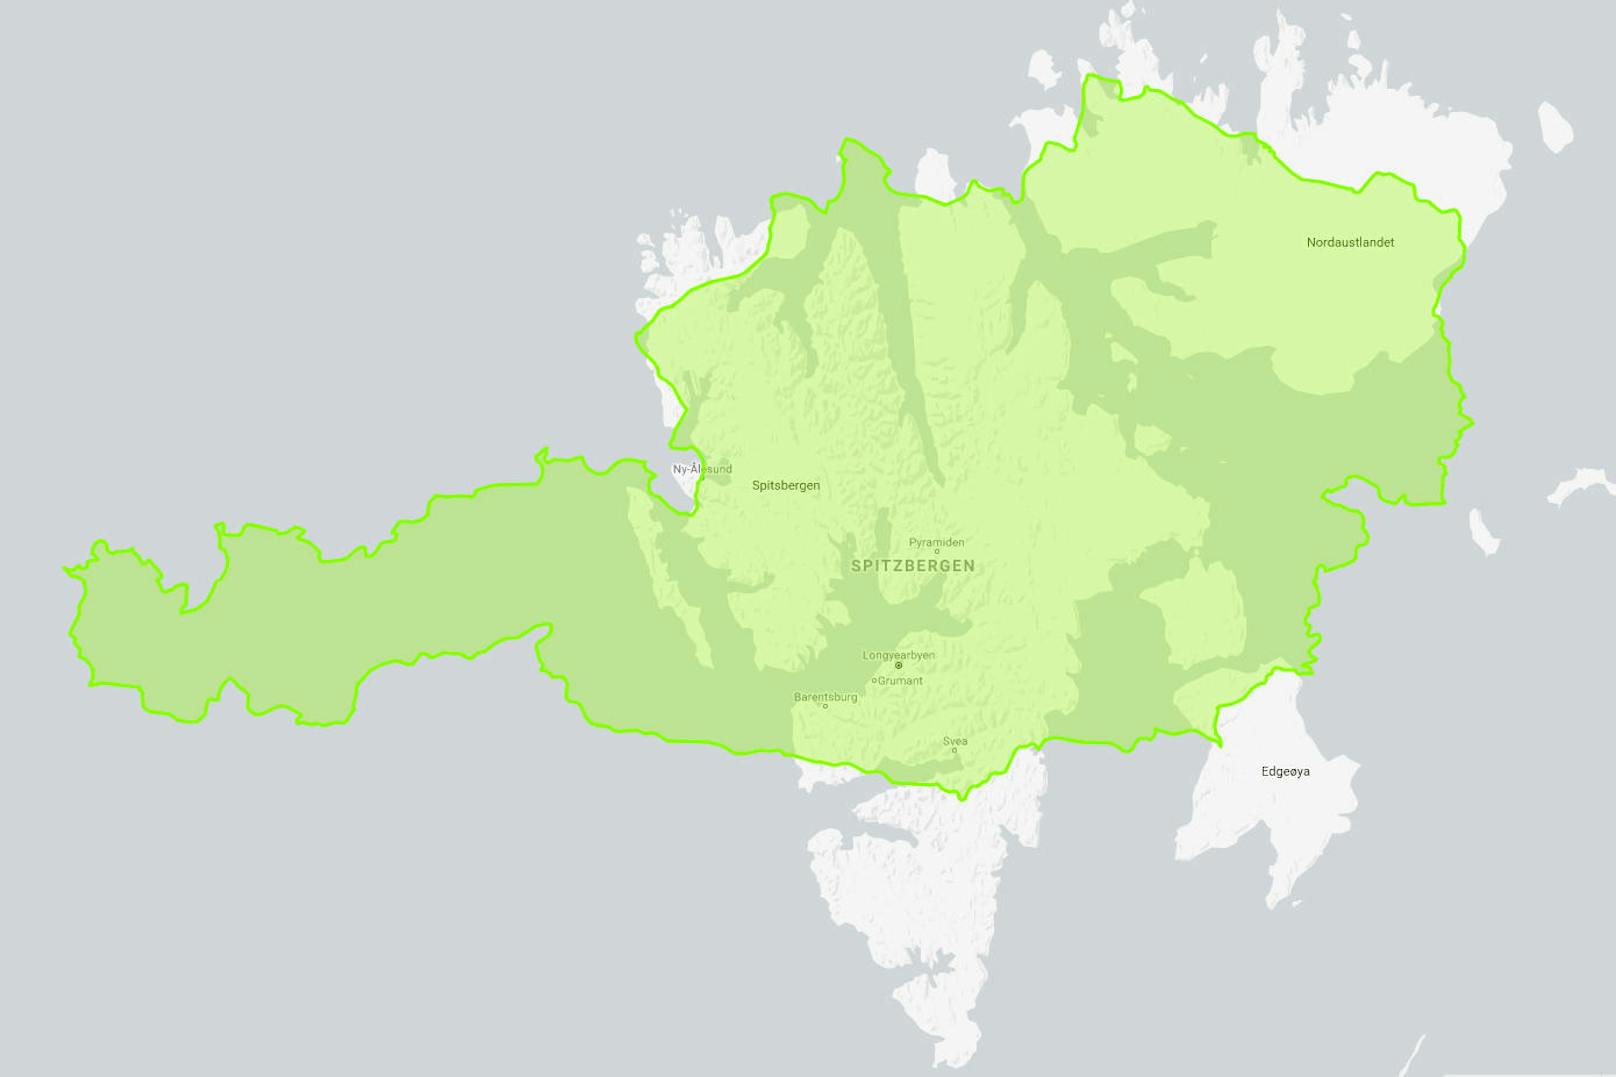 Und auch die norwegische Inselgruppe <b>Spitzbergen</b> im Arktischen Ozean ist nicht größer, obwohl sie auf Mercater-Karten ein vielfaches der Fläche einnimmt.